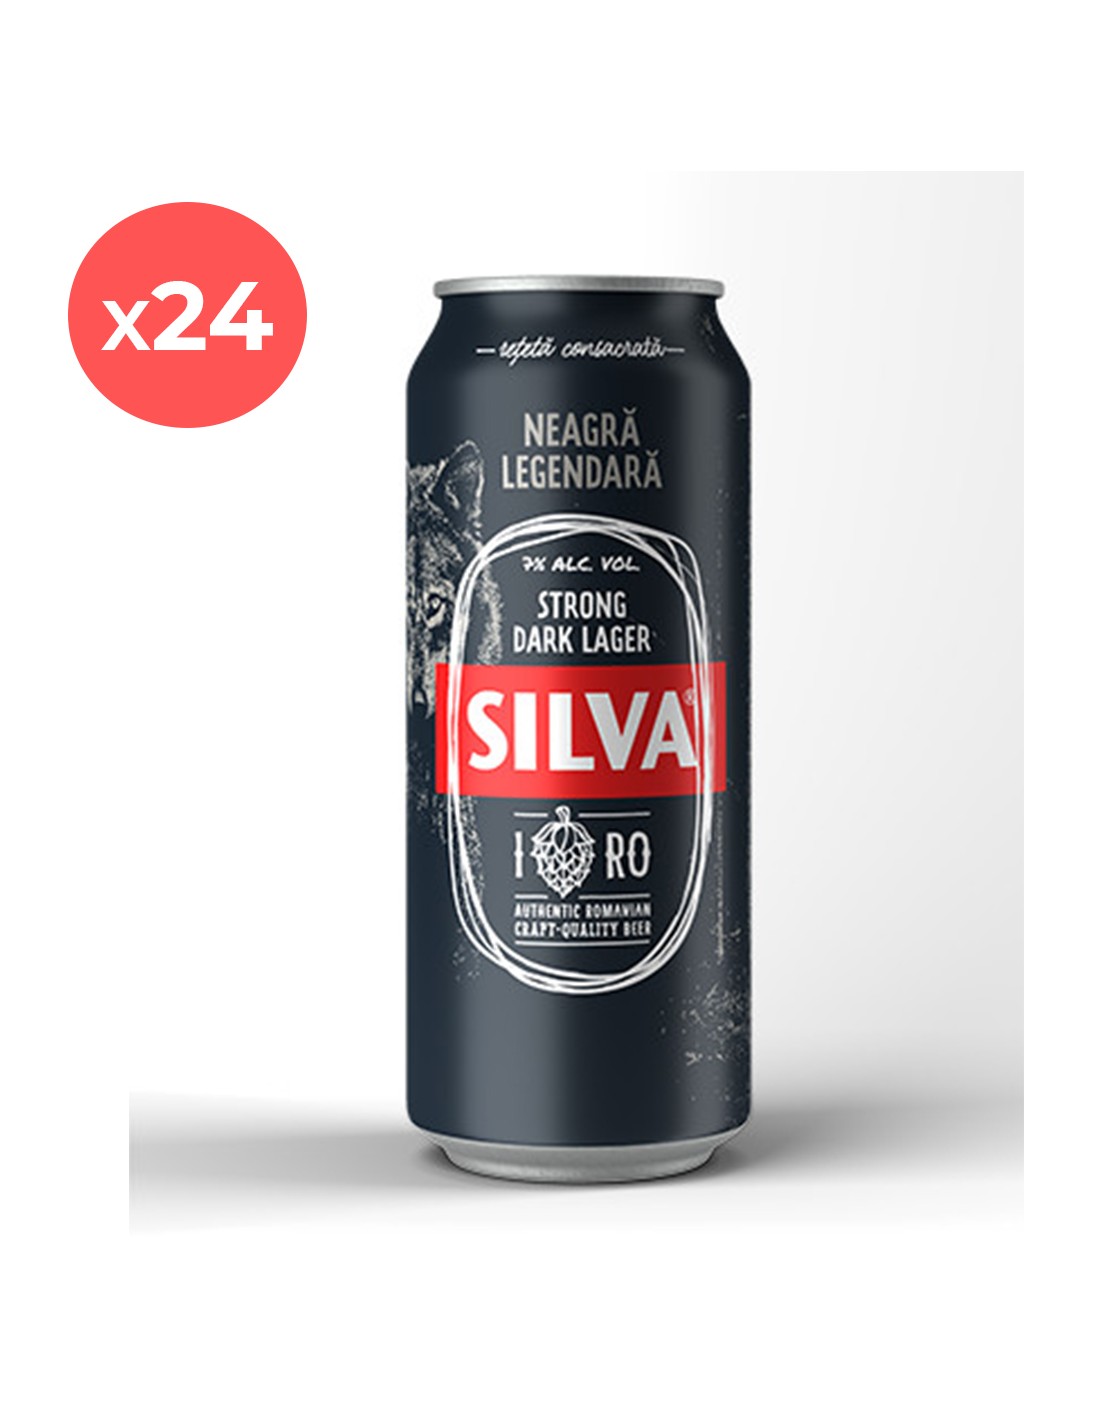 Bax 24 bucati bere neagra, Lager, Silva, 7% alc., 0.5L, doza, Romania alcooldiscount.ro